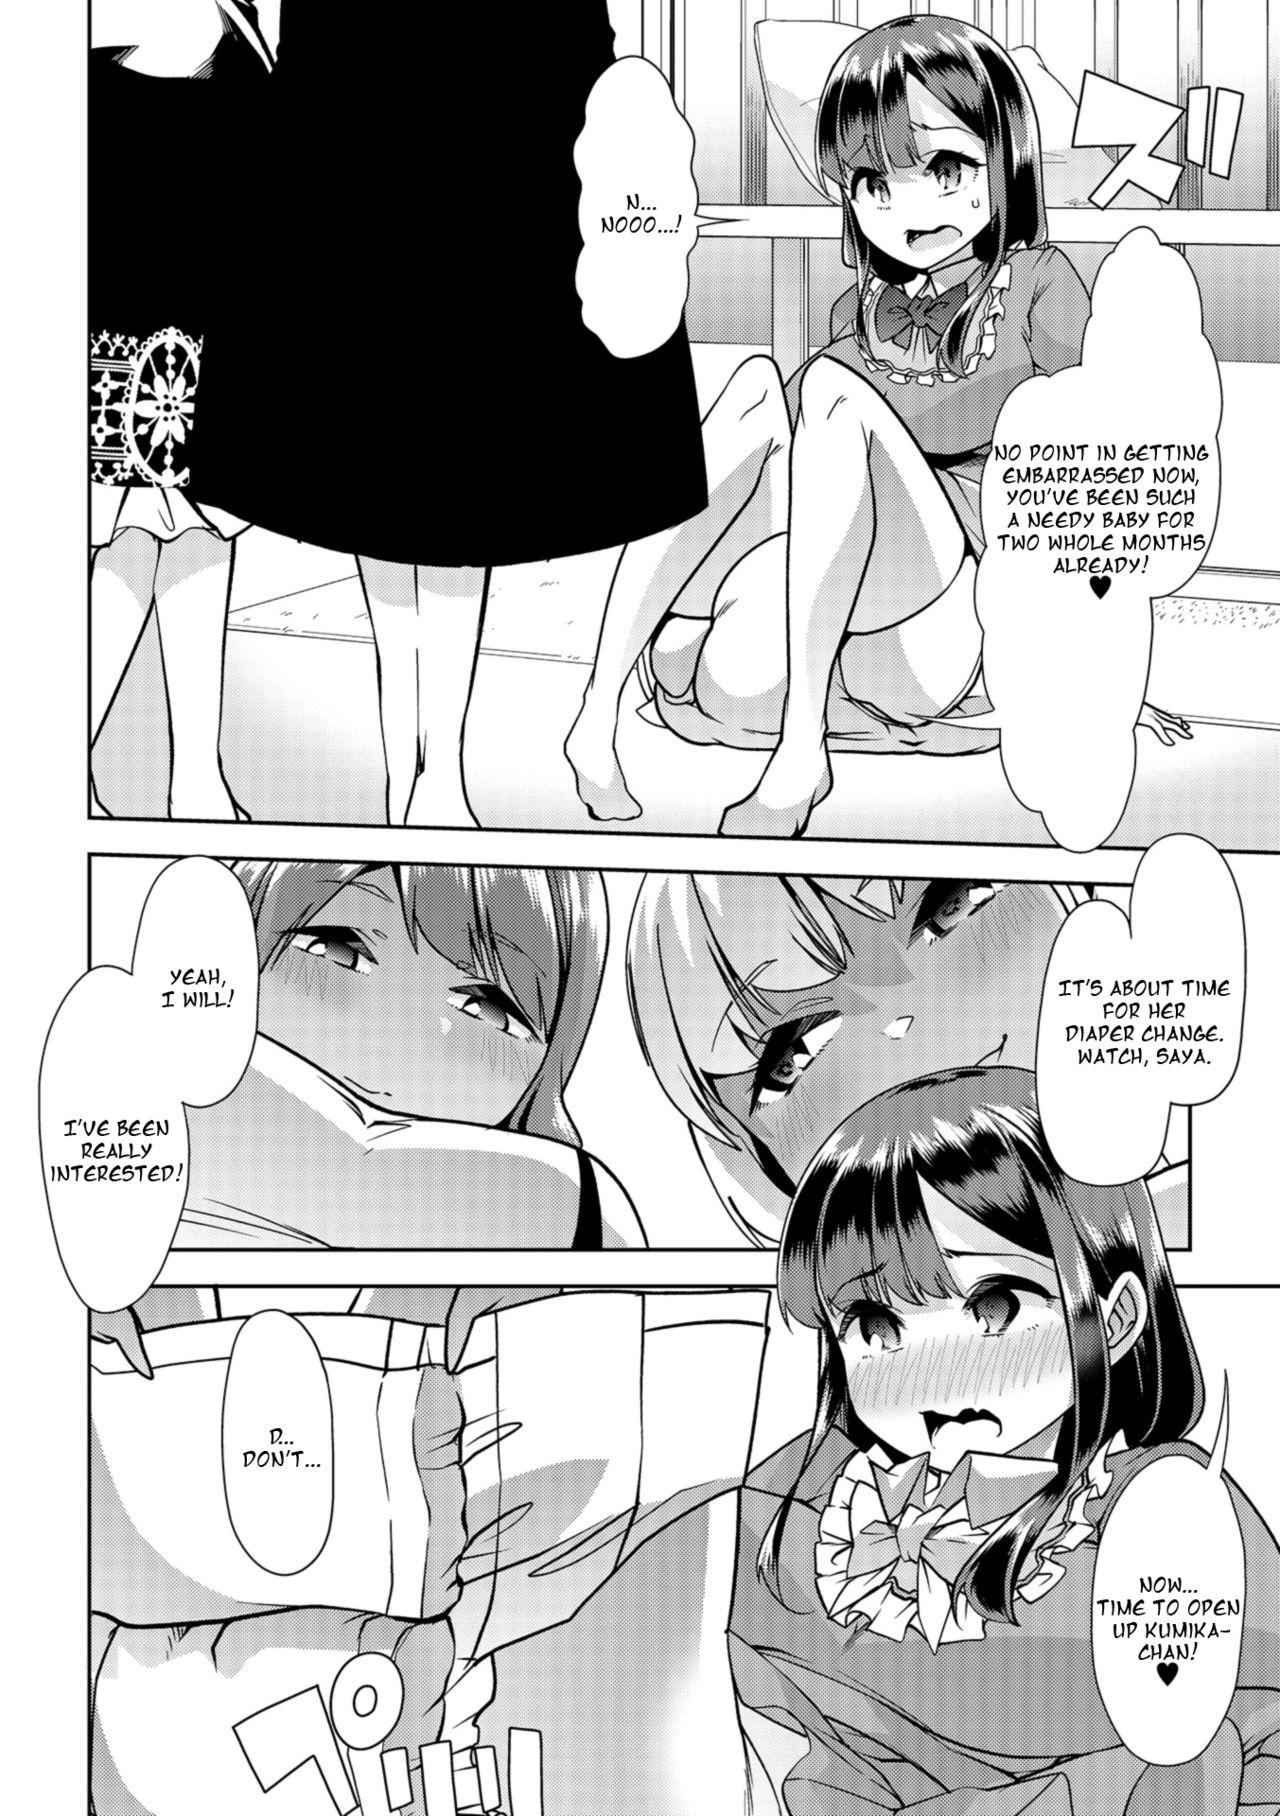 Family Himitsu no Gyaku Toile Training 4 Chicks - Page 6